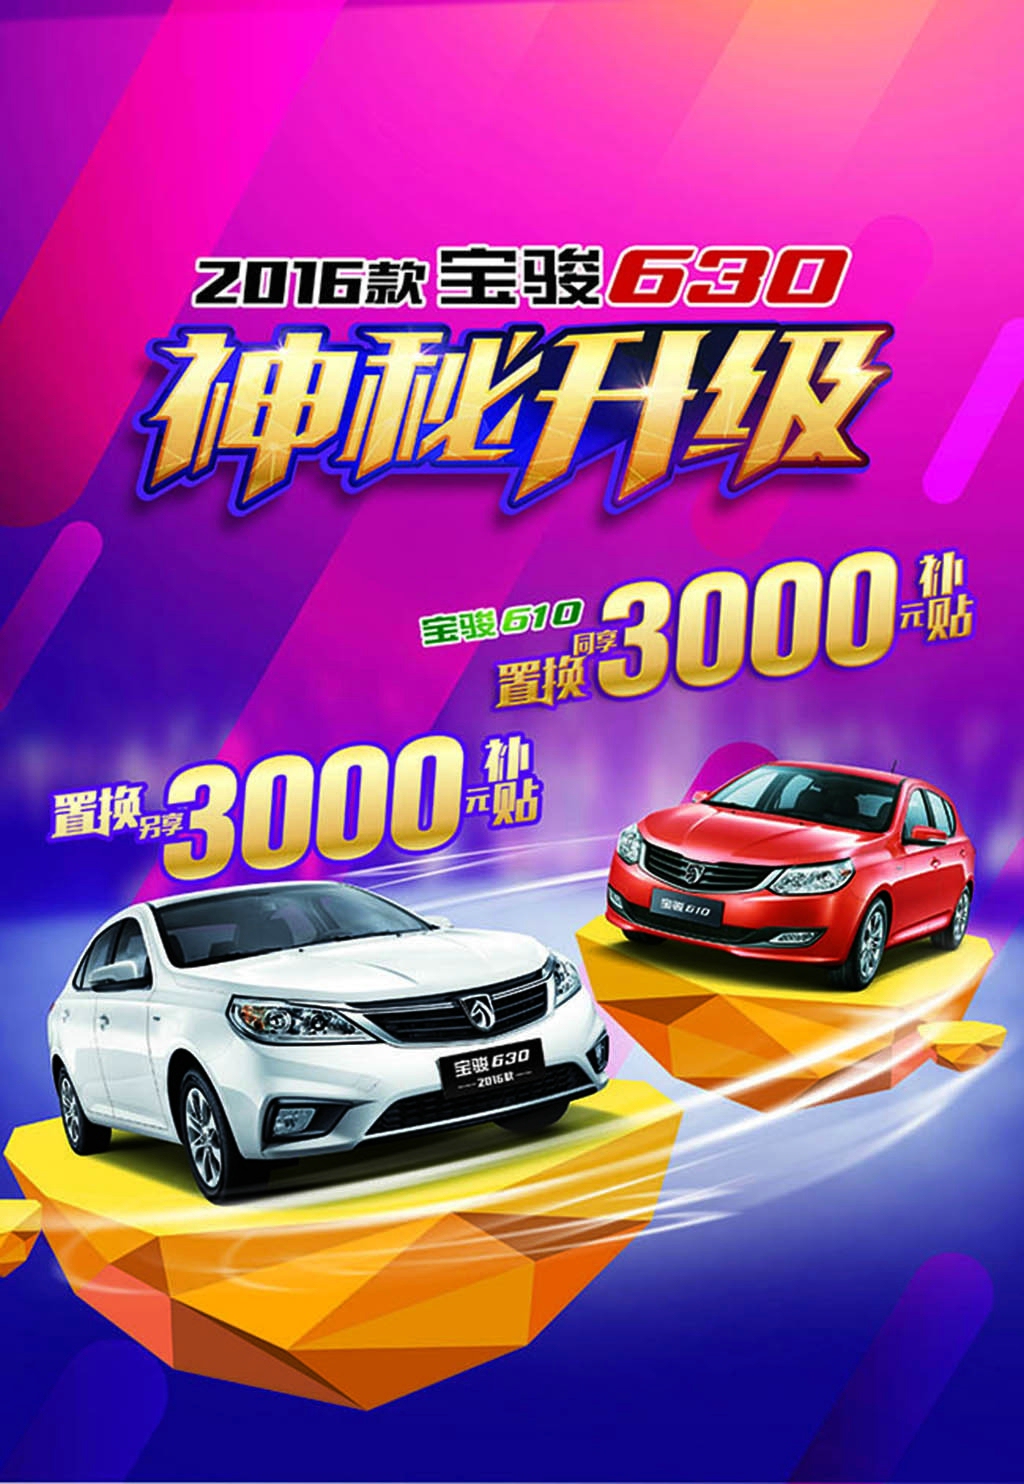 任意品牌旧车 置换雪铁龙suv天逸 旧车可增值2万元_搜狐汽车_搜狐网